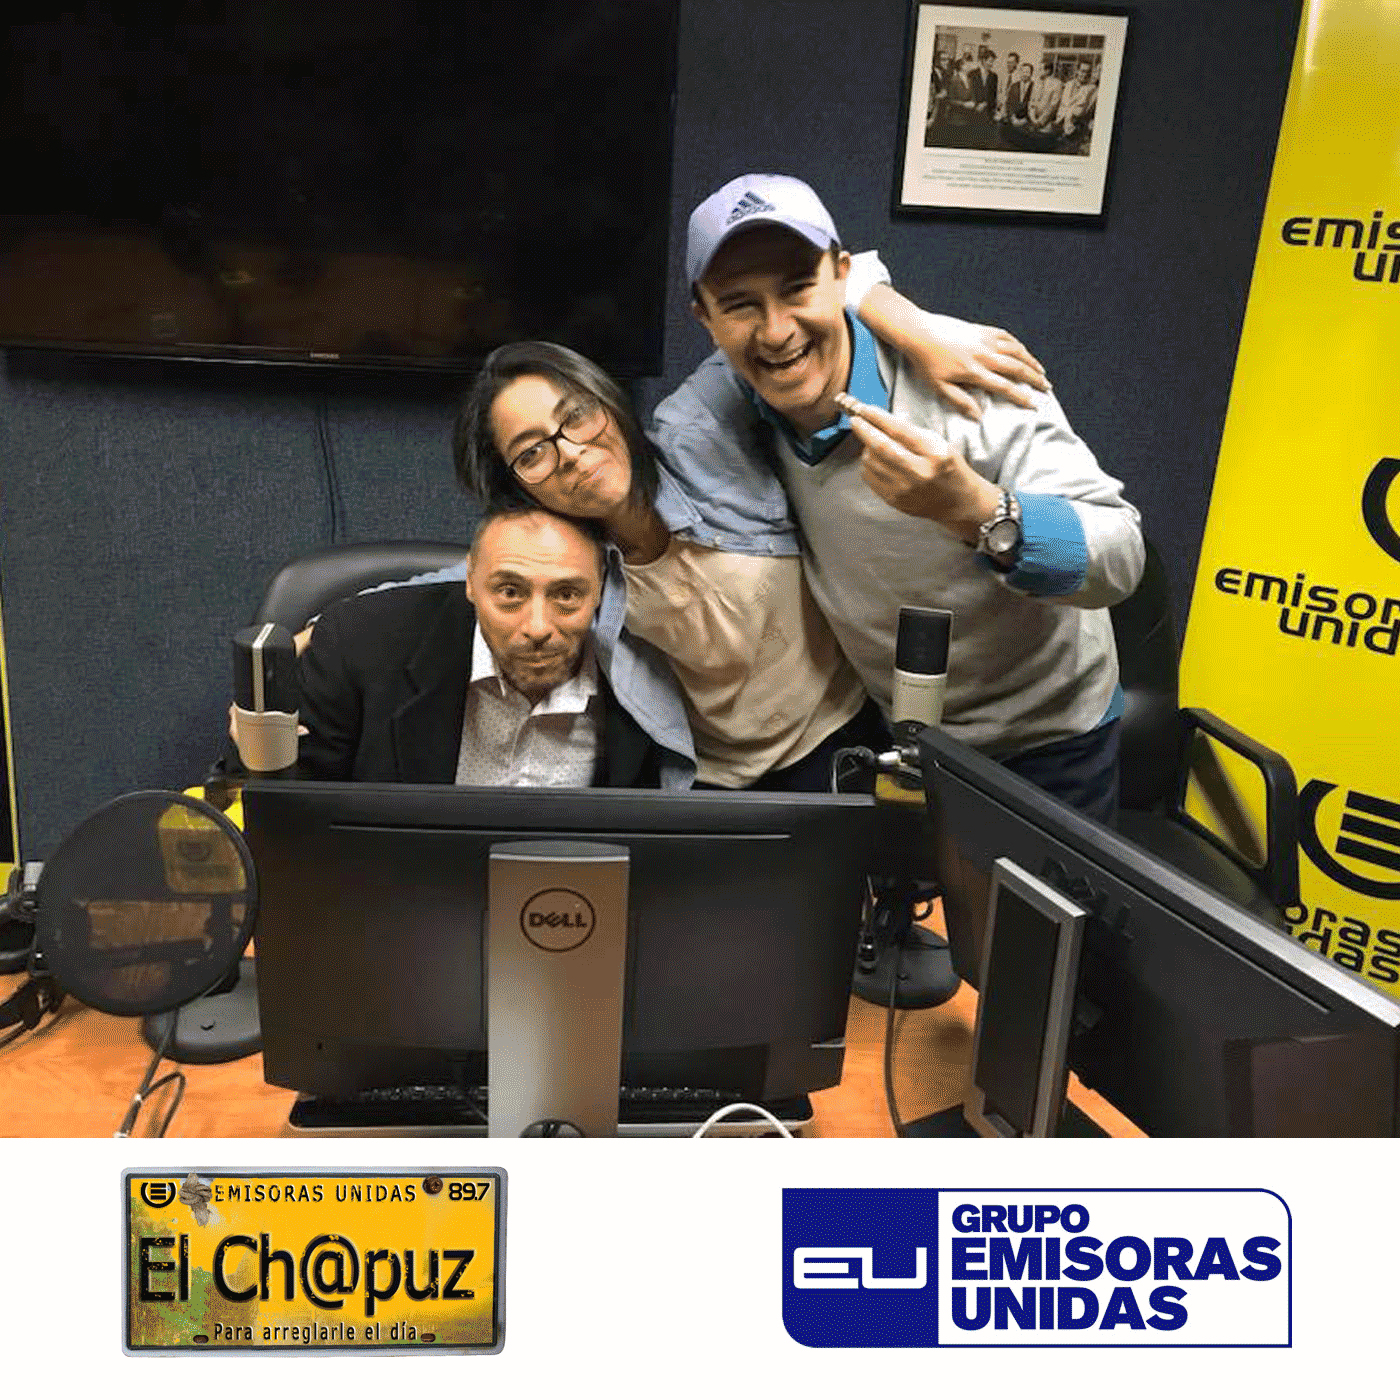 EC57 - El Chapuz - Emisoras unidas - #VamosPaLaFeria